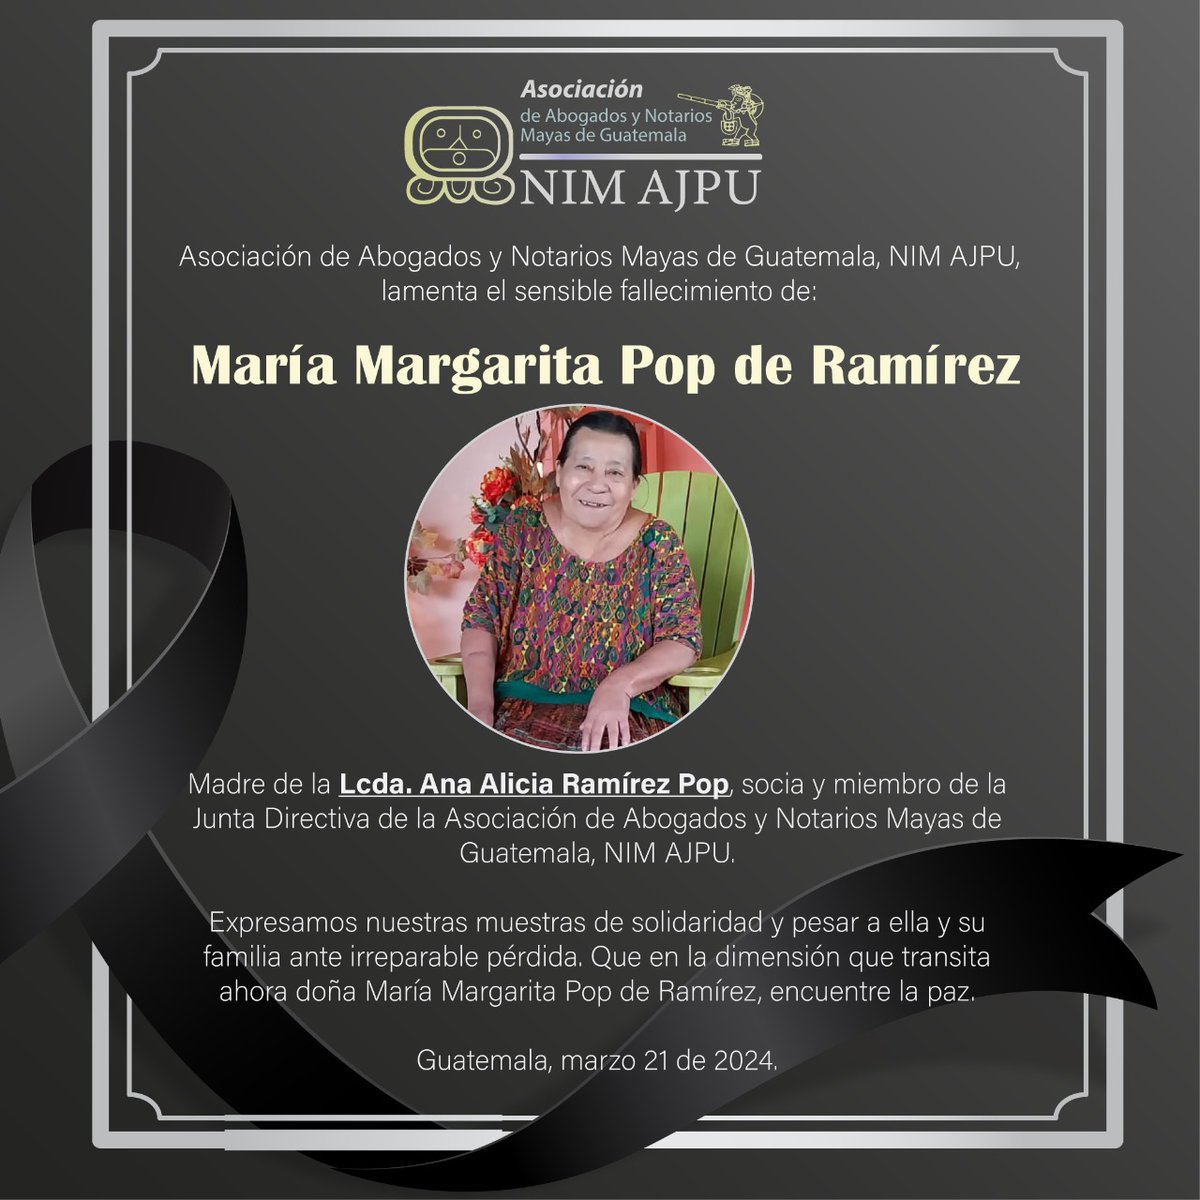 @nimajpu, lamenta el sensible fallecimiento de: María Margarita Pop de Ramírez Madre de la Lcda. Ana Alicia Ramírez Pop, socia y miembro de la Junta Directiva de @nimajpu. Expresamos nuestras muestras de solidaridad y pesar a ella y su familia ante irreparable pérdida.